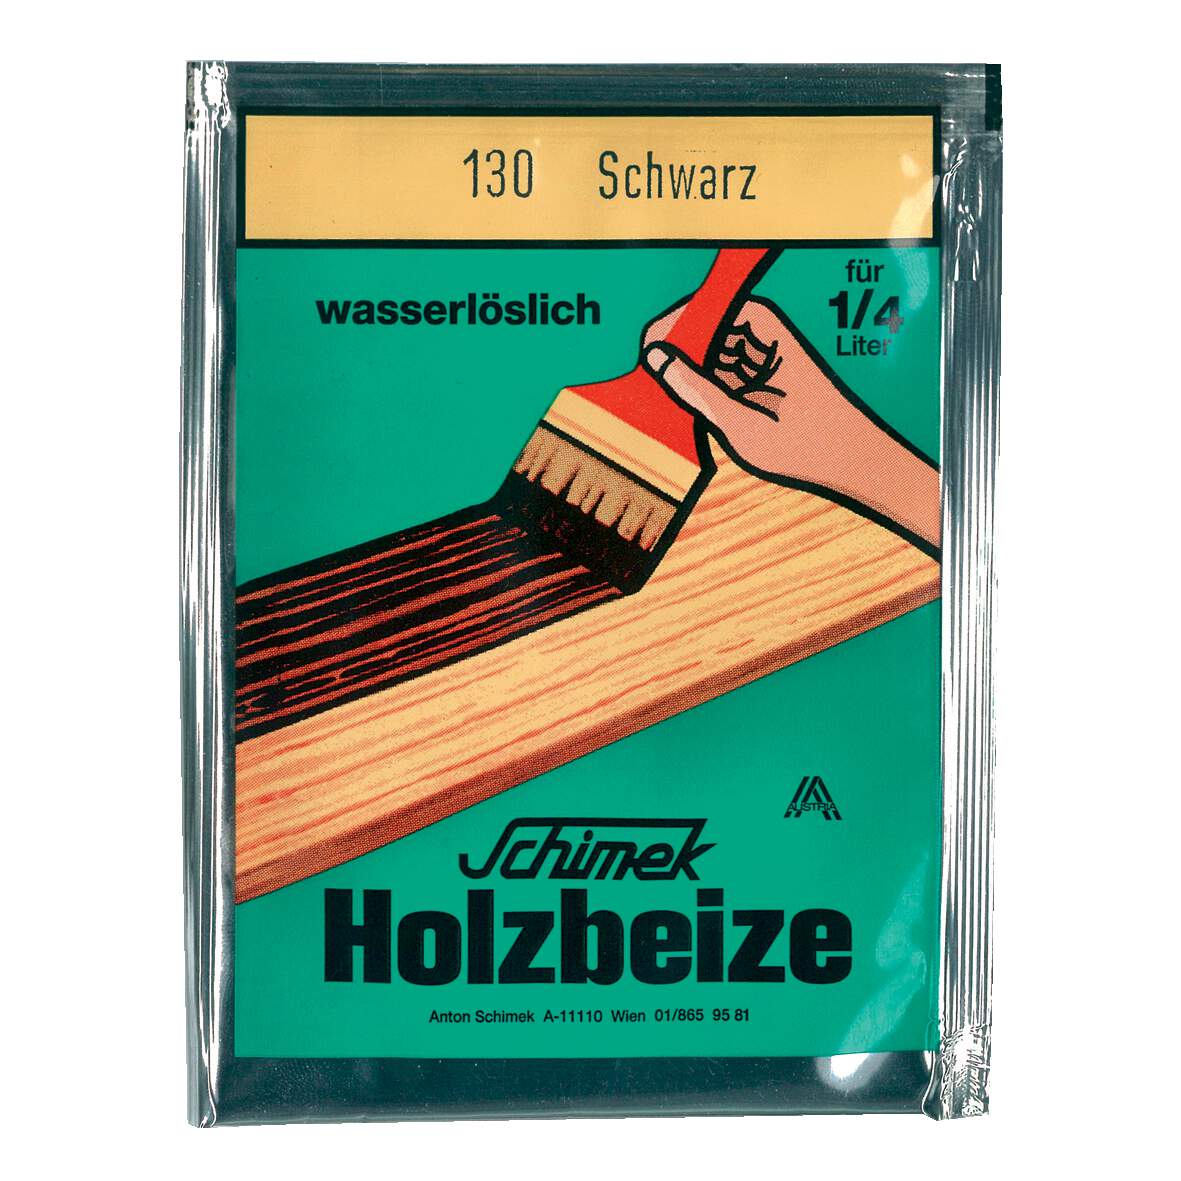 1216617 - Holzbeize wasserlöslich